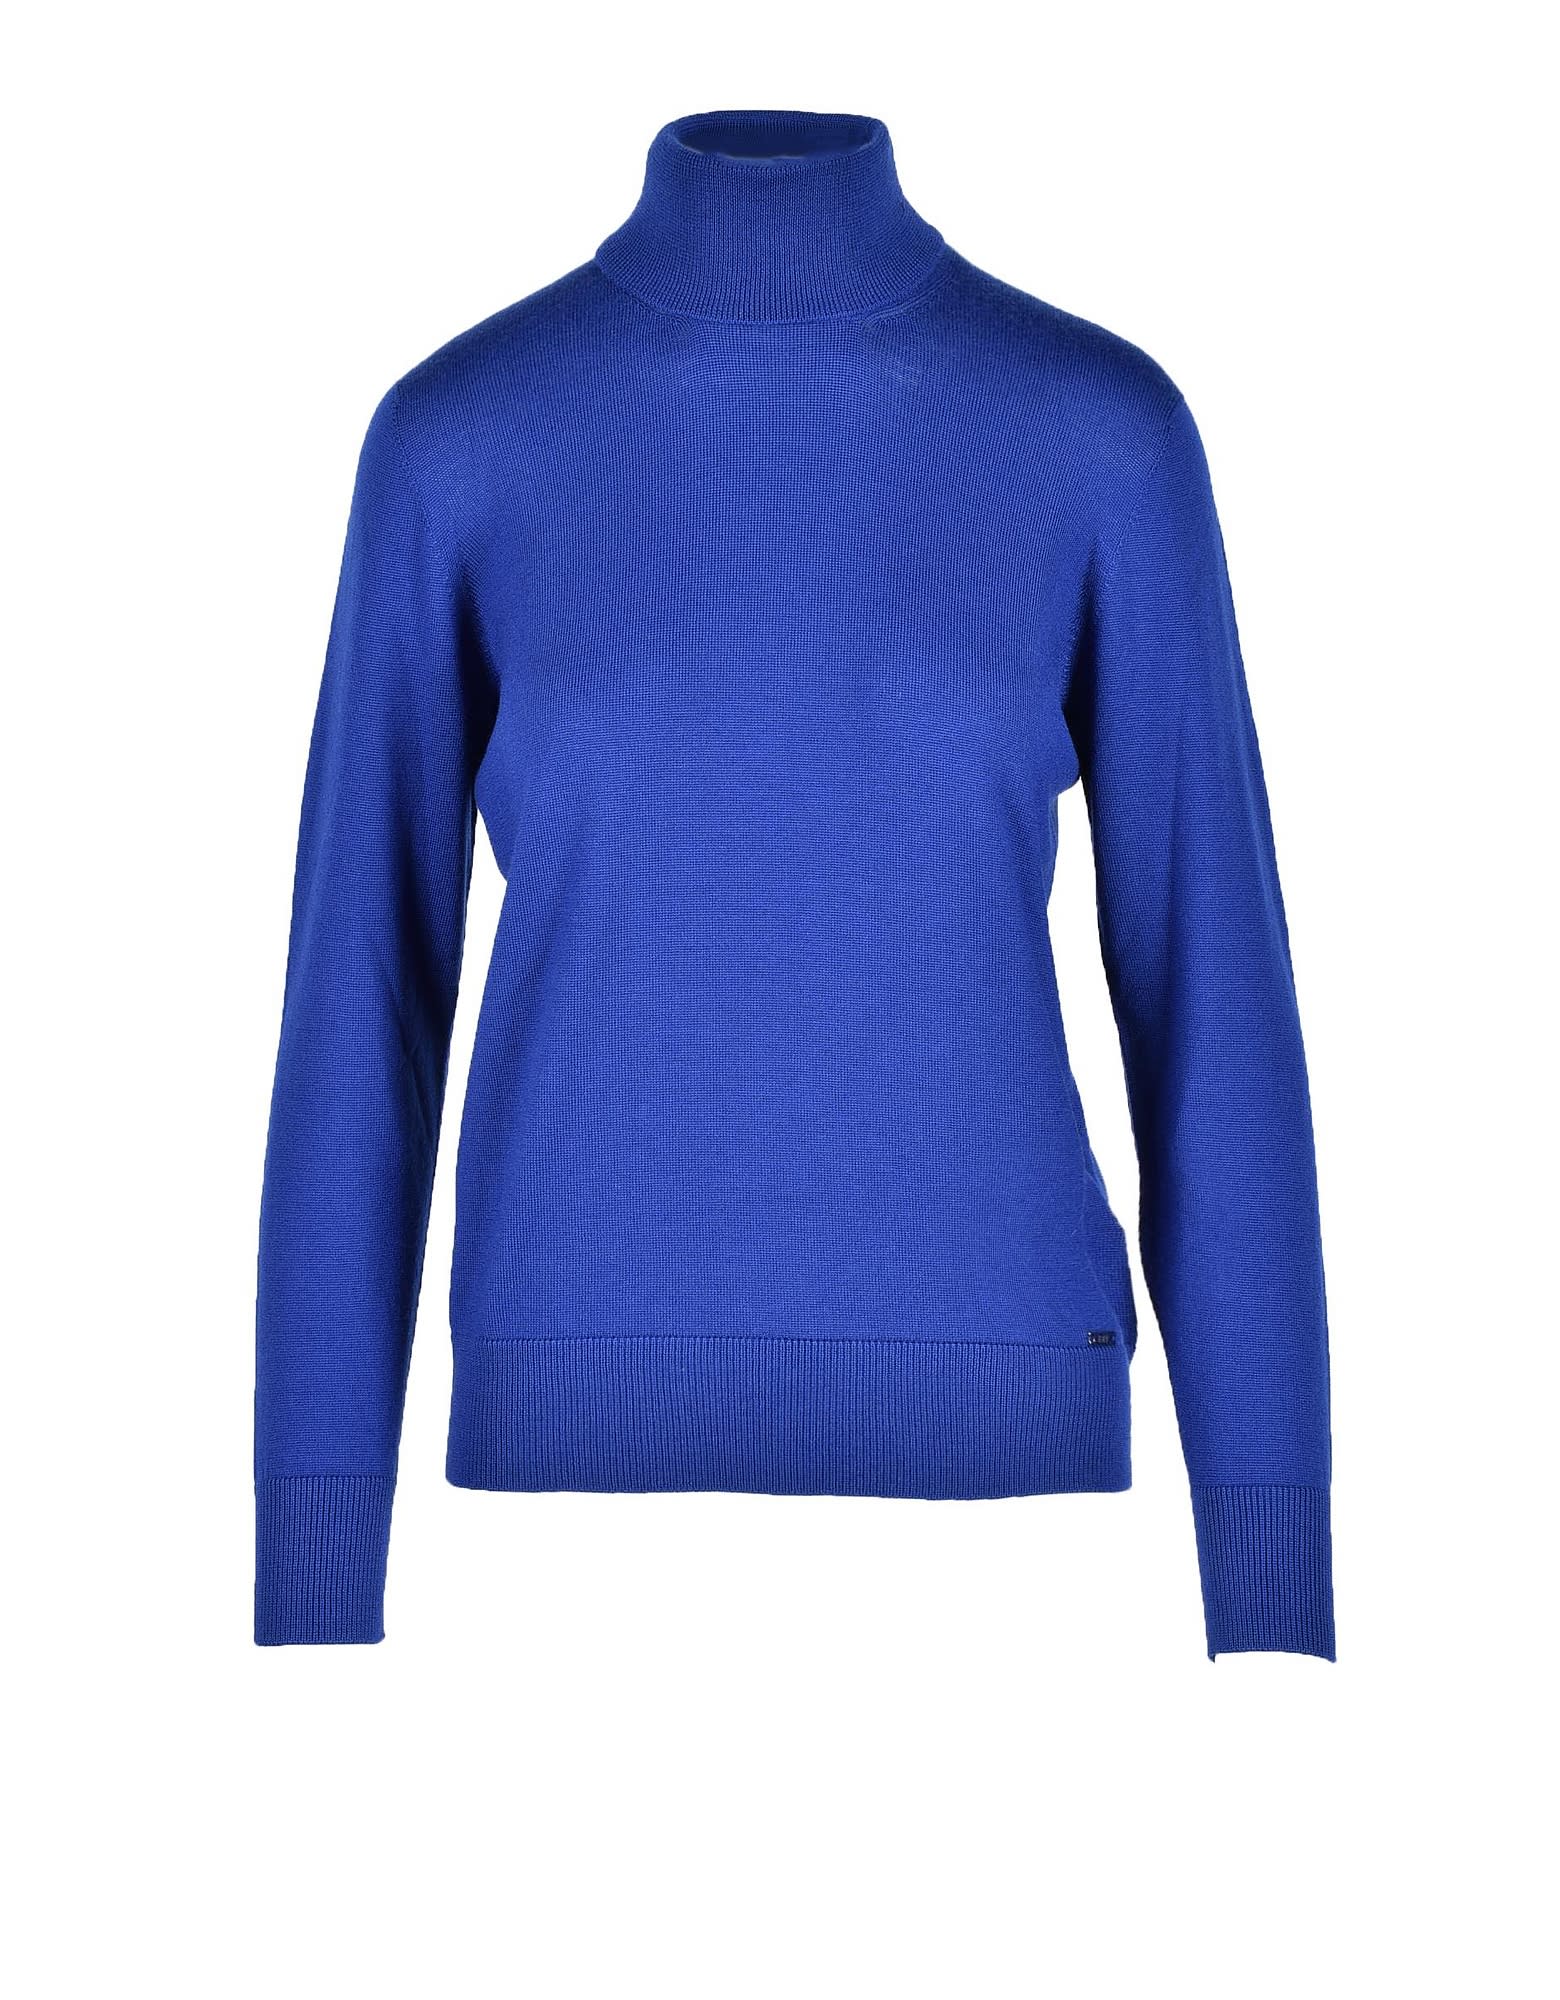 Fay Womens Bluette Sweater